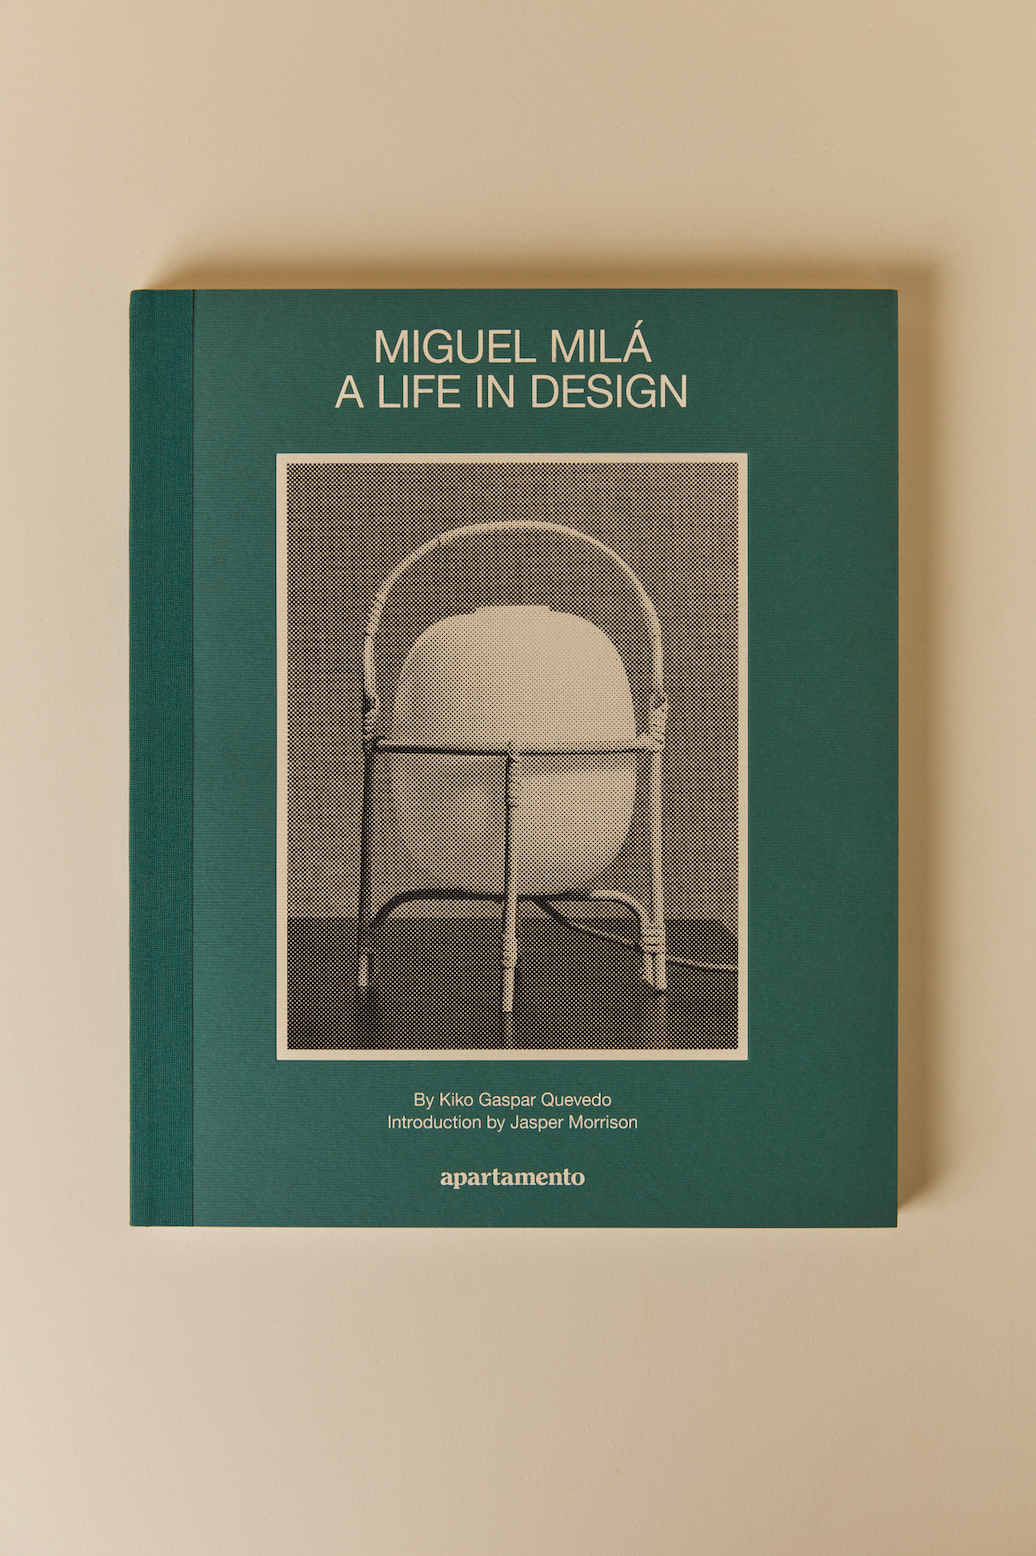 Apartamento - Miguel Milá: A Life in Design